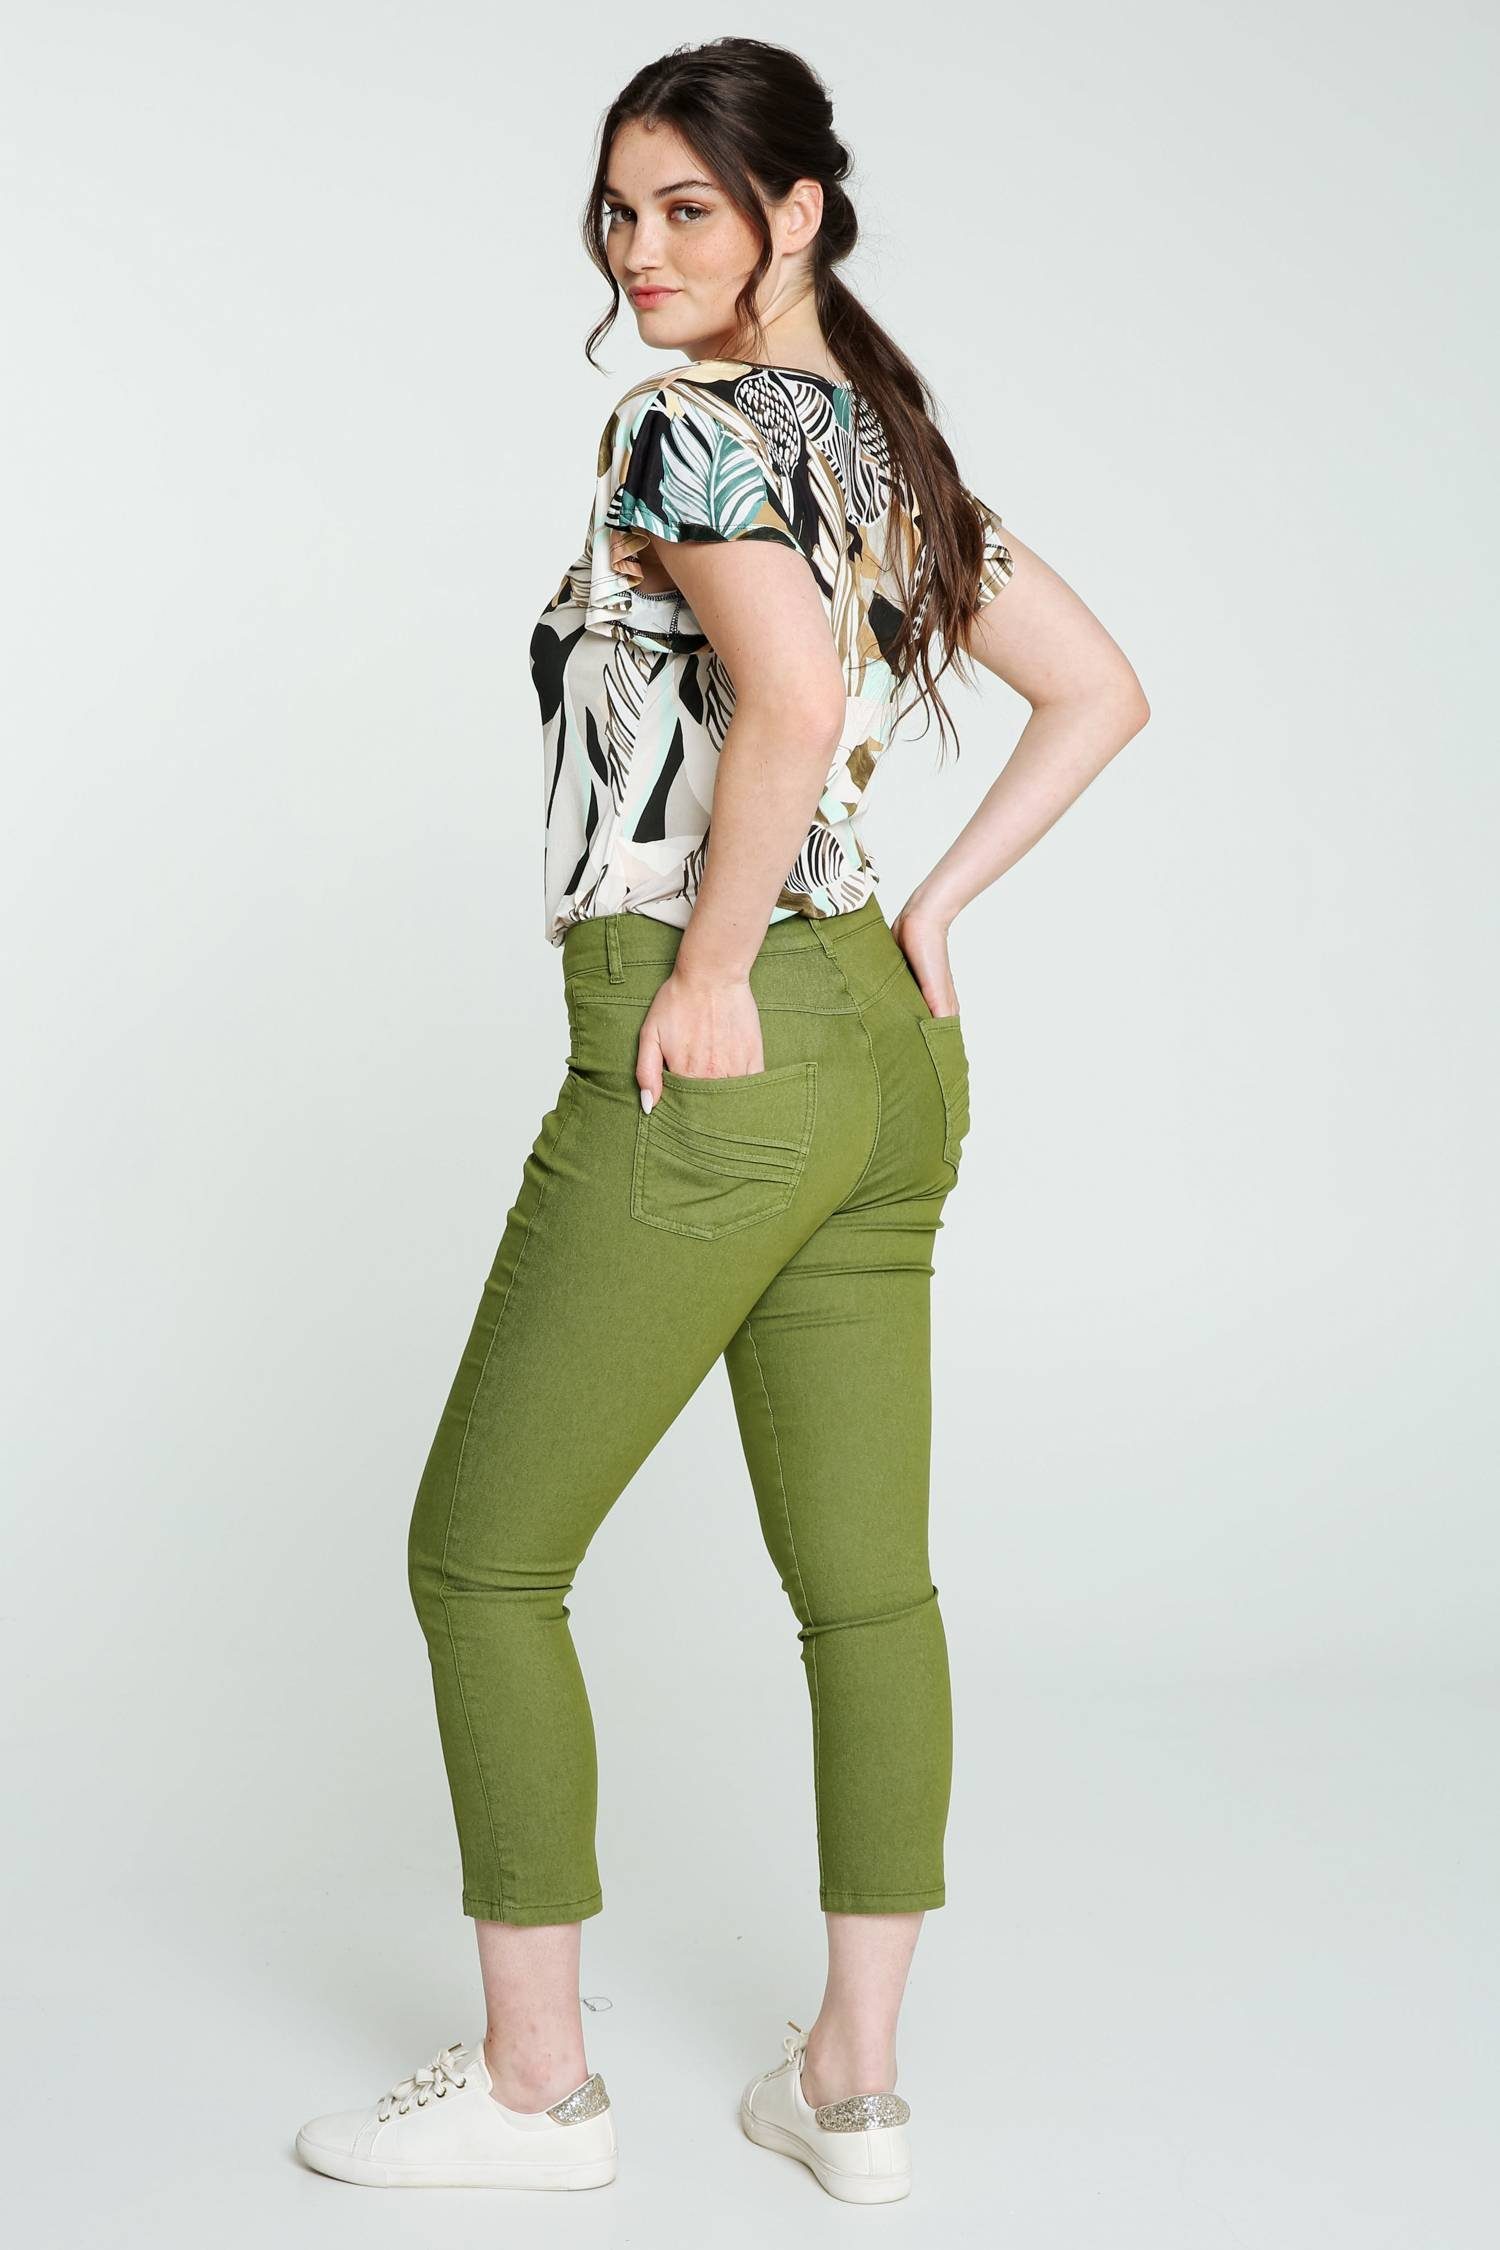 Cassis 5-Pocket-Jeans Slim-Fit-7/8-Jeans Mit Taschen Und Faltendetail 5